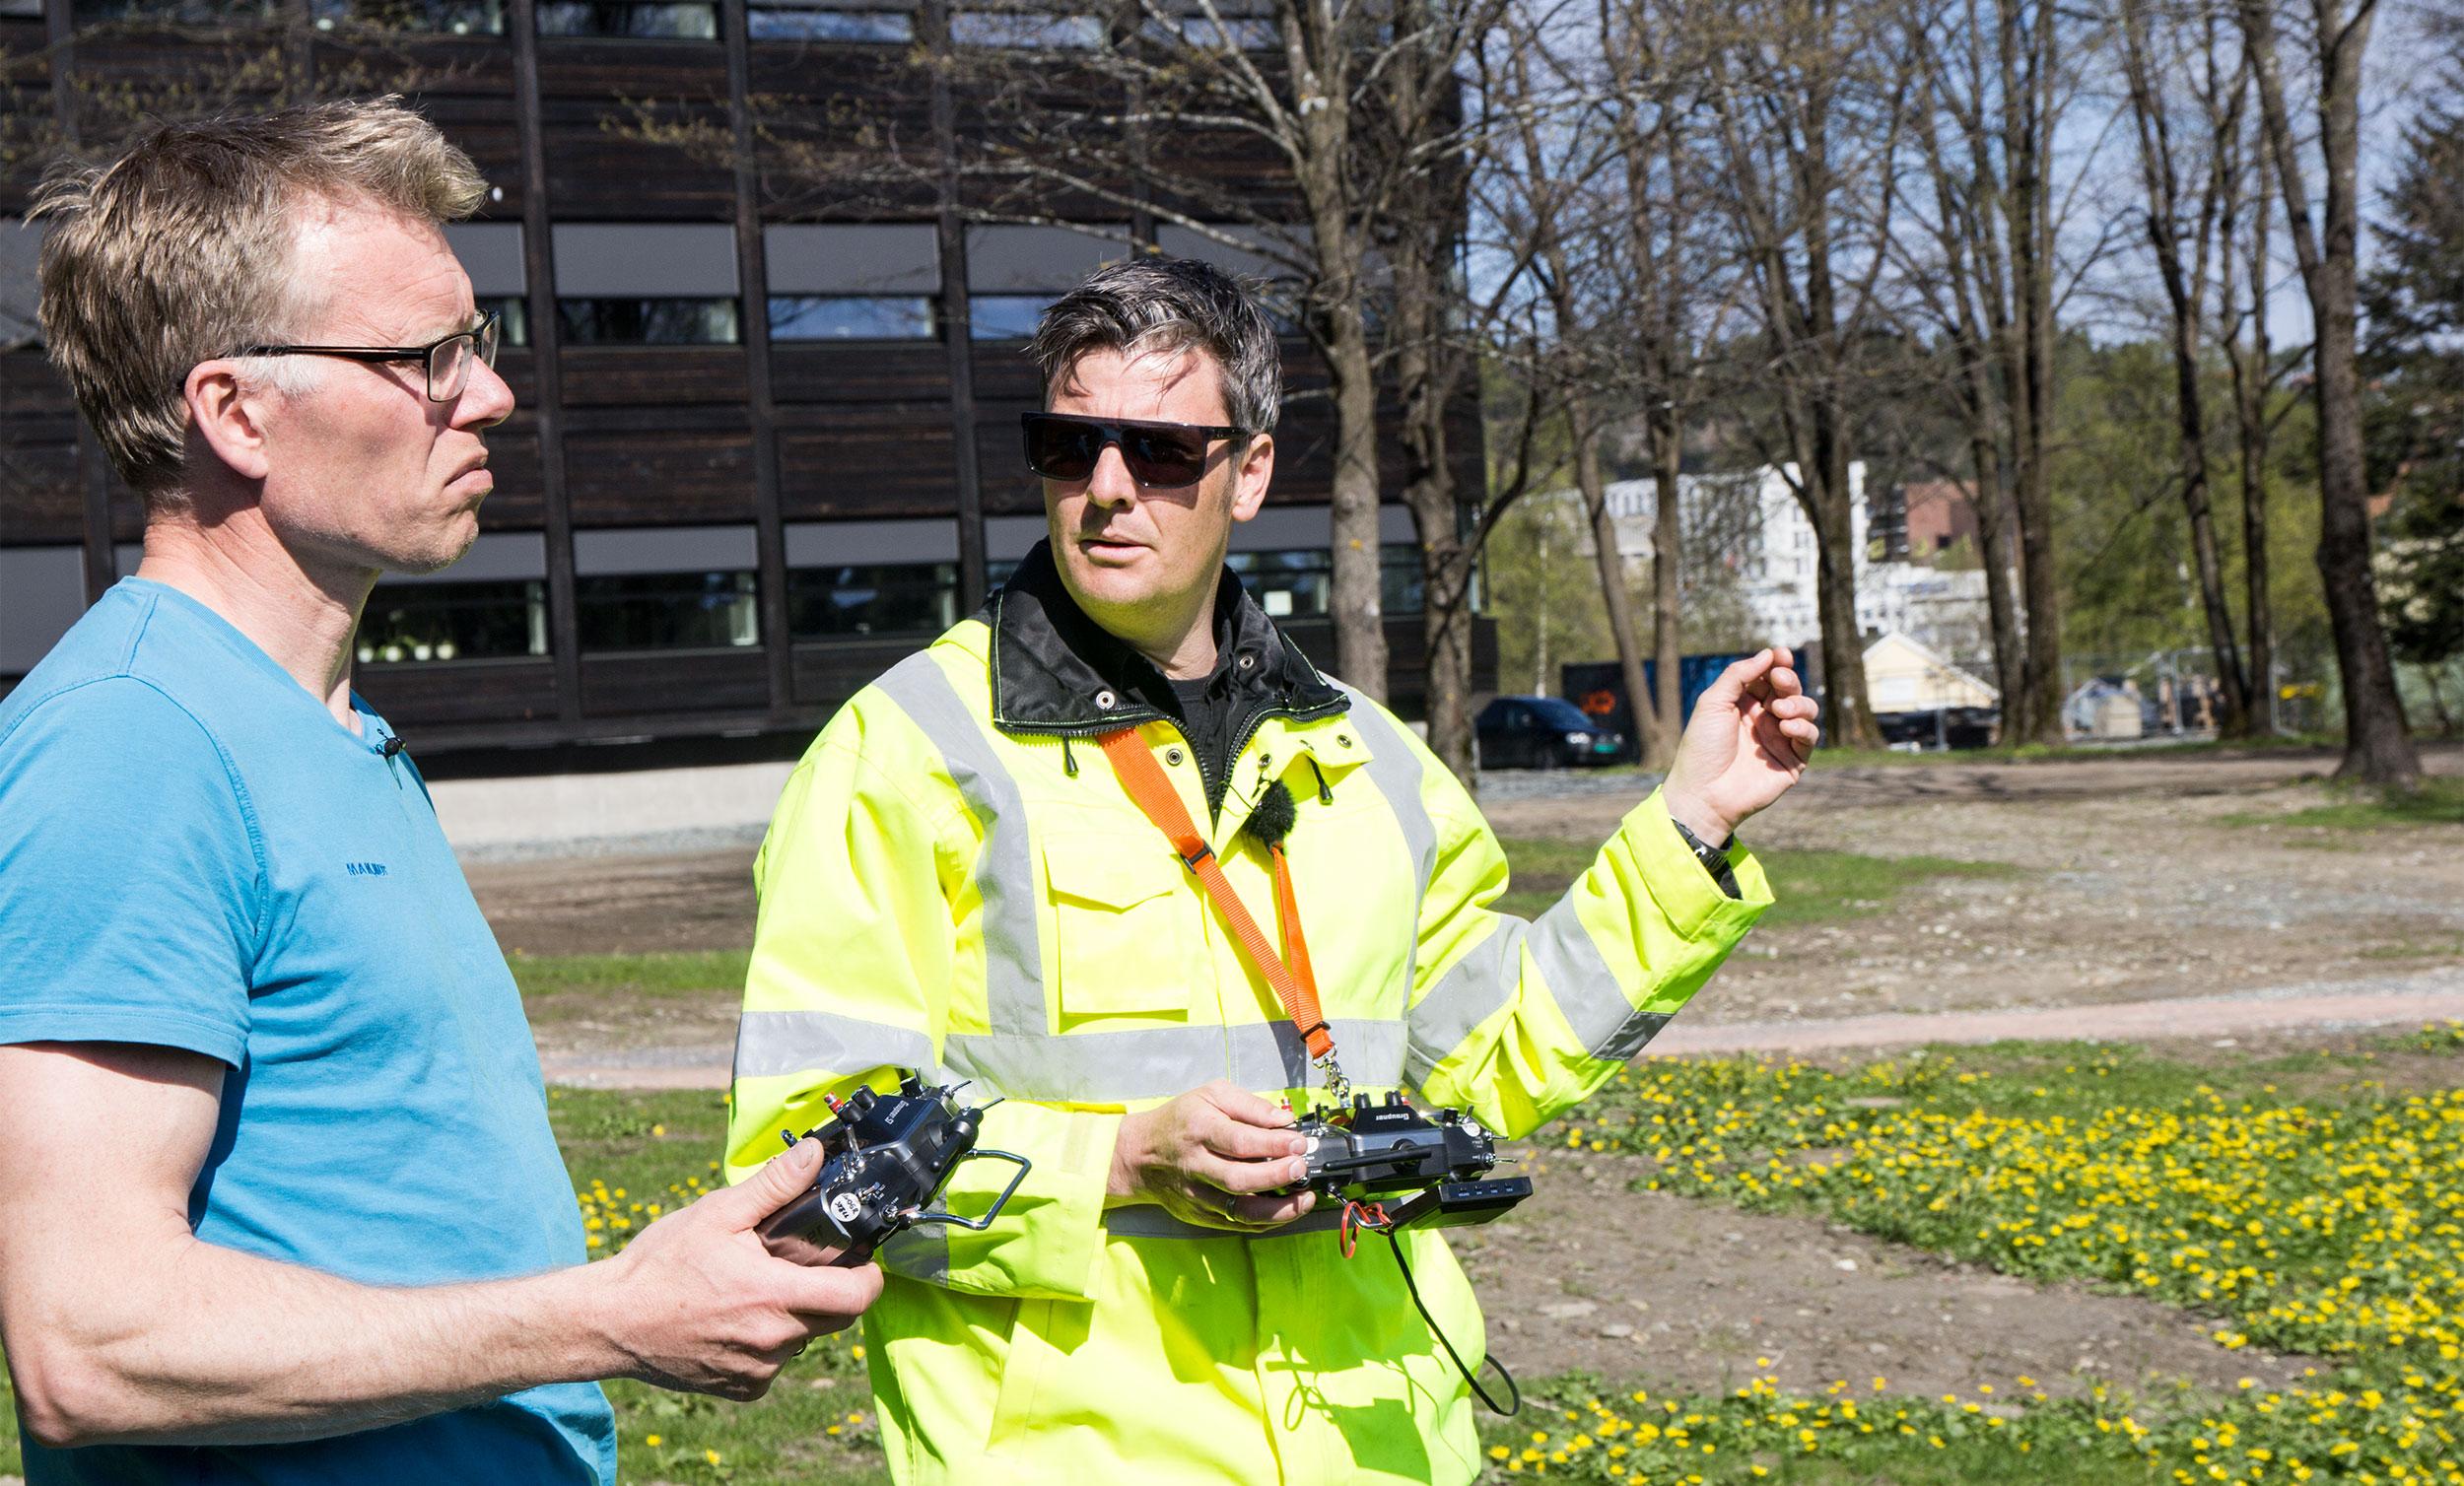 Kai Nybakk (venstre) styrer videokameraet, Morten Henden Aamot (høyre), flyr selve dronen.Foto: Håvard Fossen, InsideTelecom.no